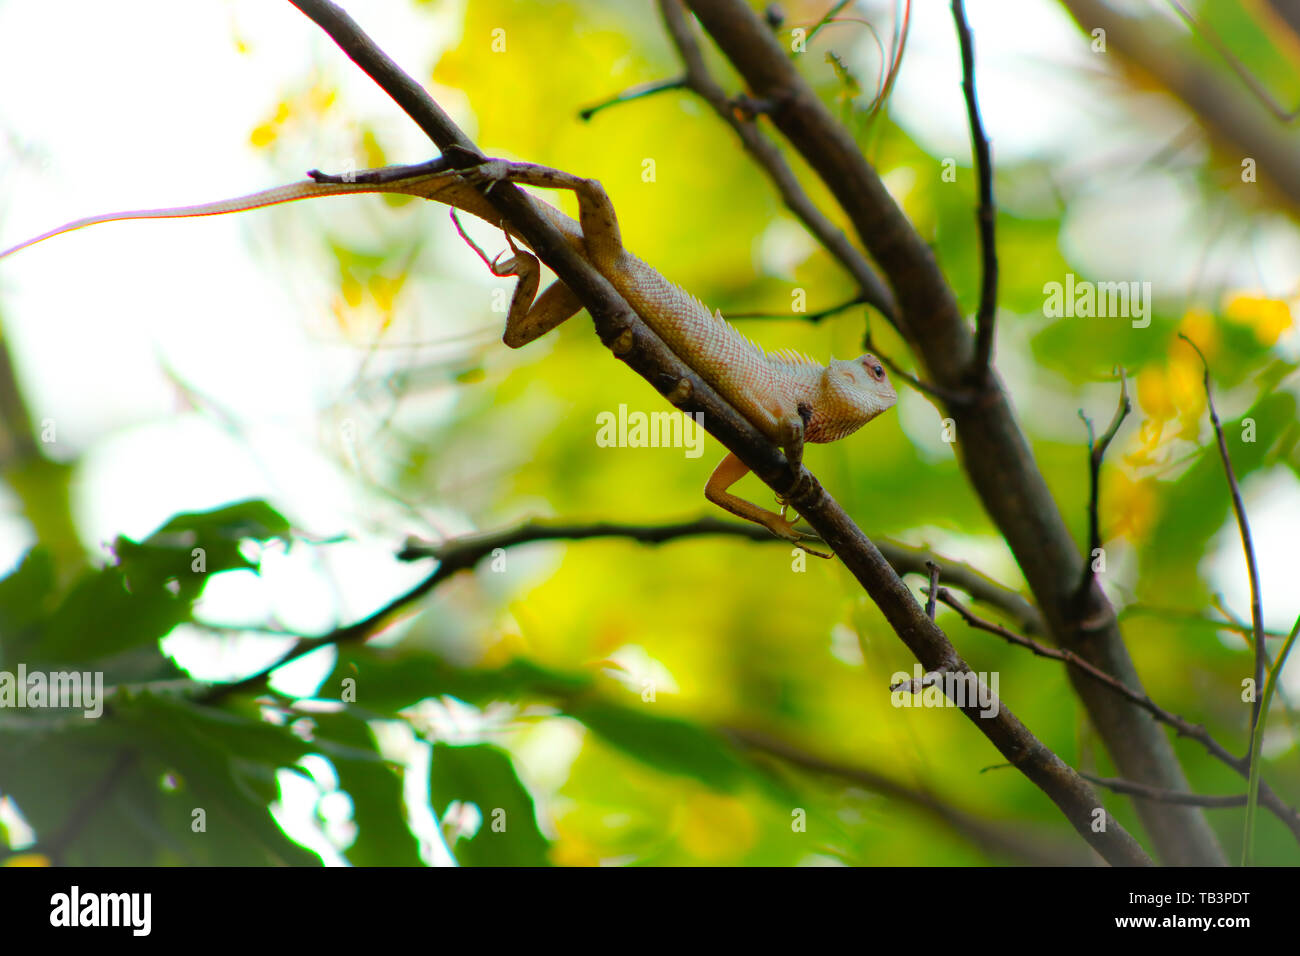 Garden lizard Stock Photo